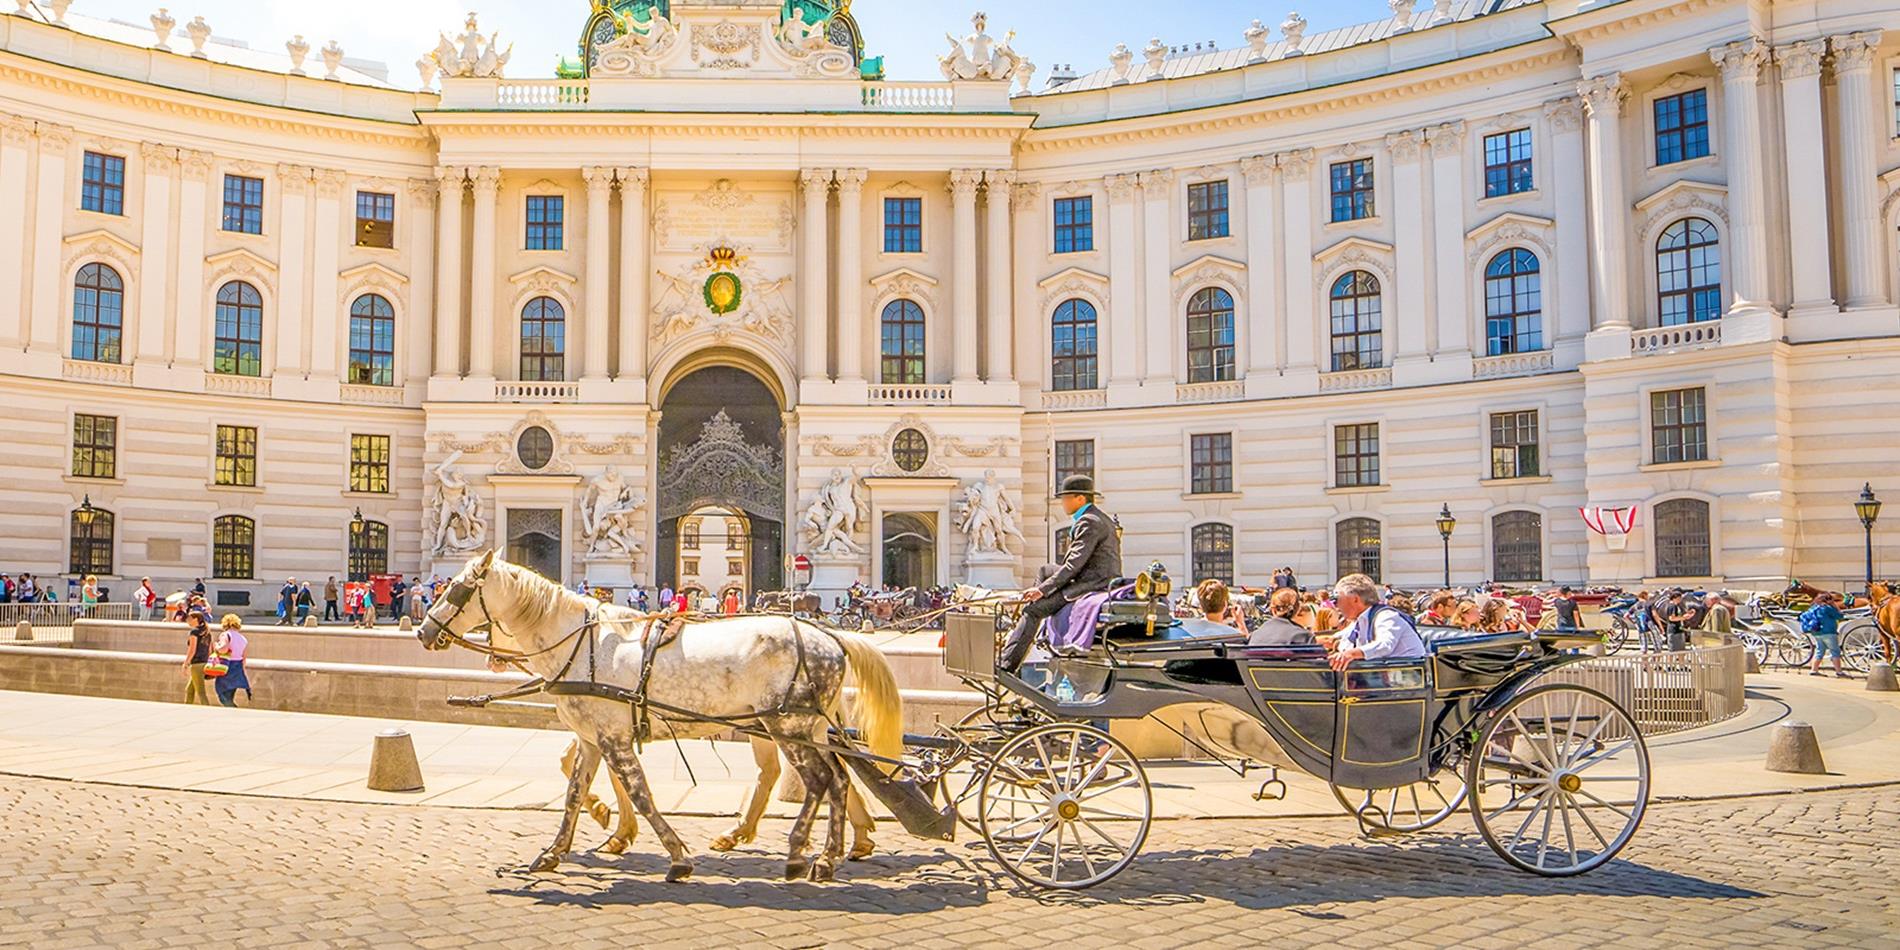 Tourists sightseeing in Alte Hofburg, Vienna, Austria